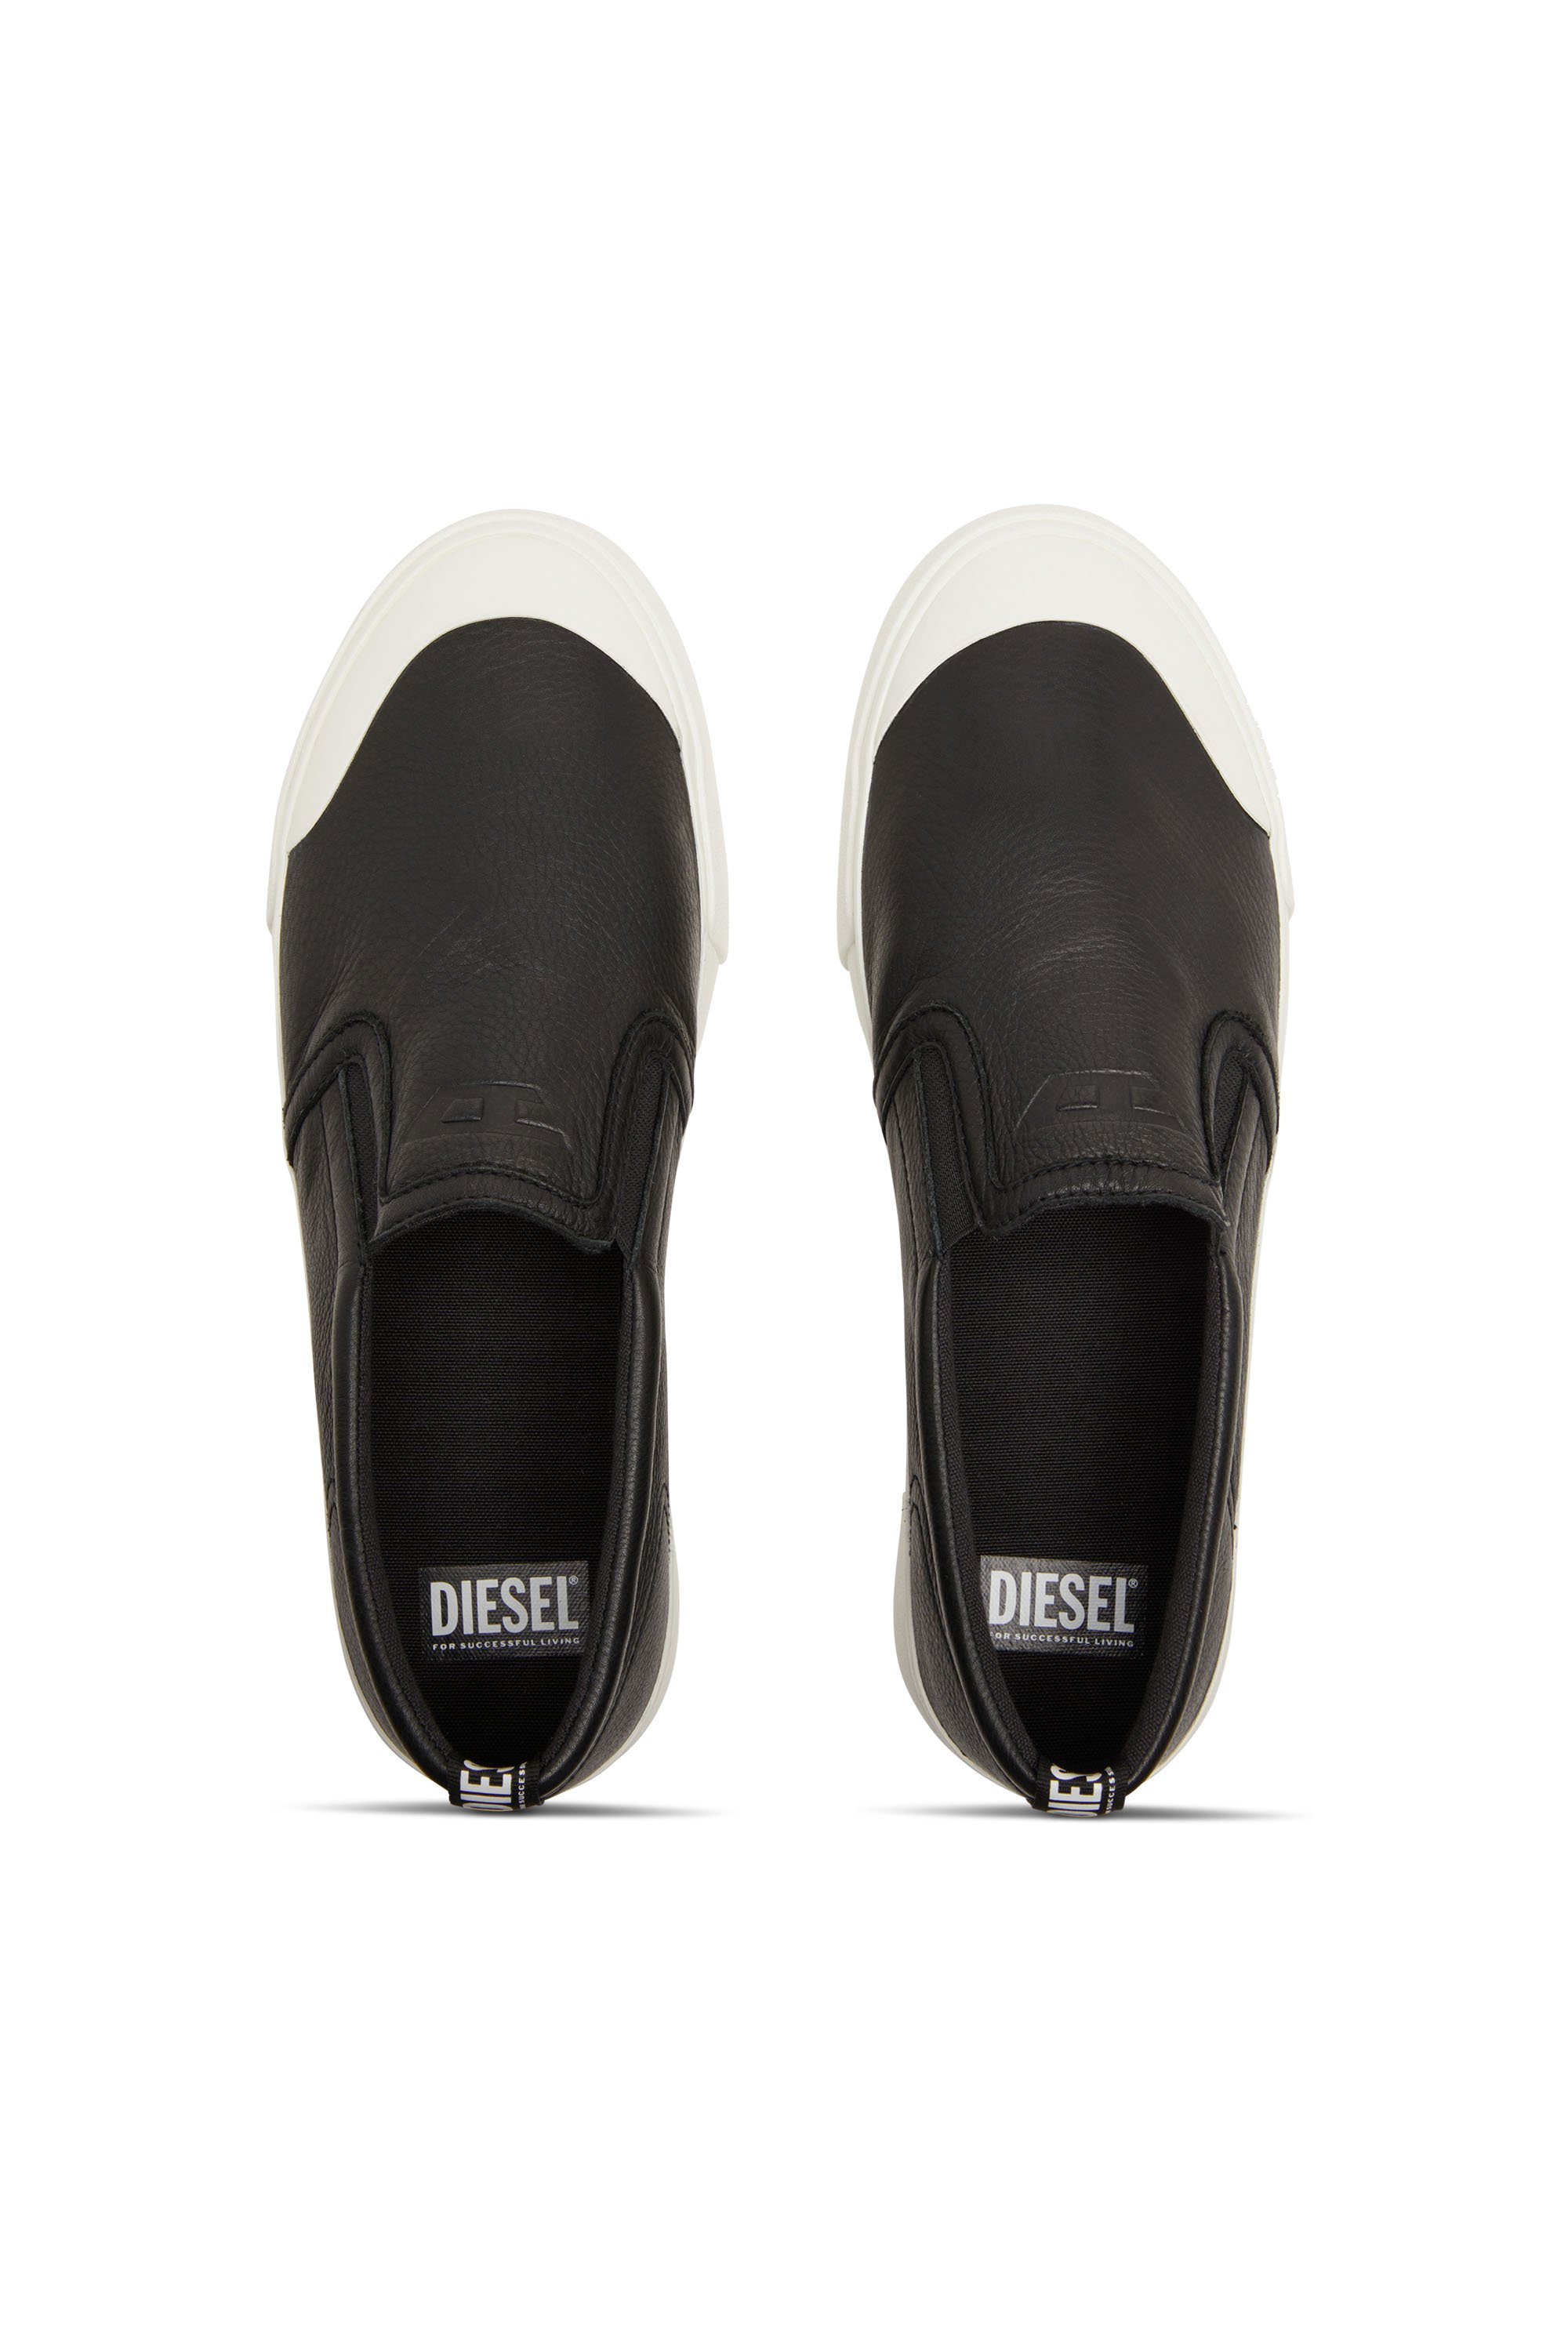 Diesel - S-ATHOS SLIP ON, Herren S-Athos-Verschlusslose Sneakers aus einfarbigem Leder in Schwarz - Image 5